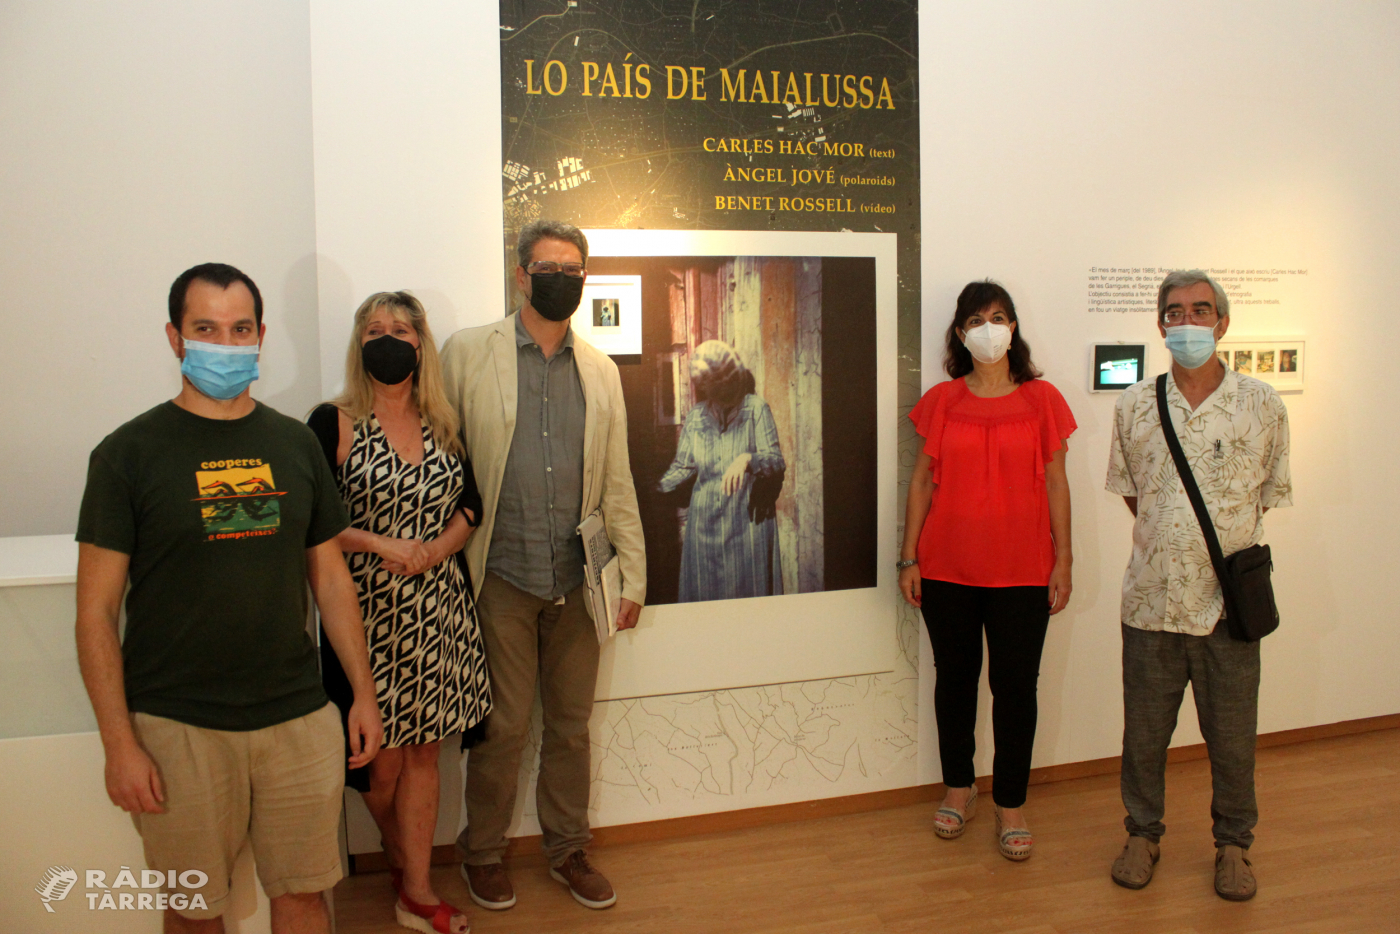 La Sala Marsà de Tàrrega exhibeix un treball conjunt dels artistes lleidatans Carles Hac Mor, Àngel Jové i Benet Rossell